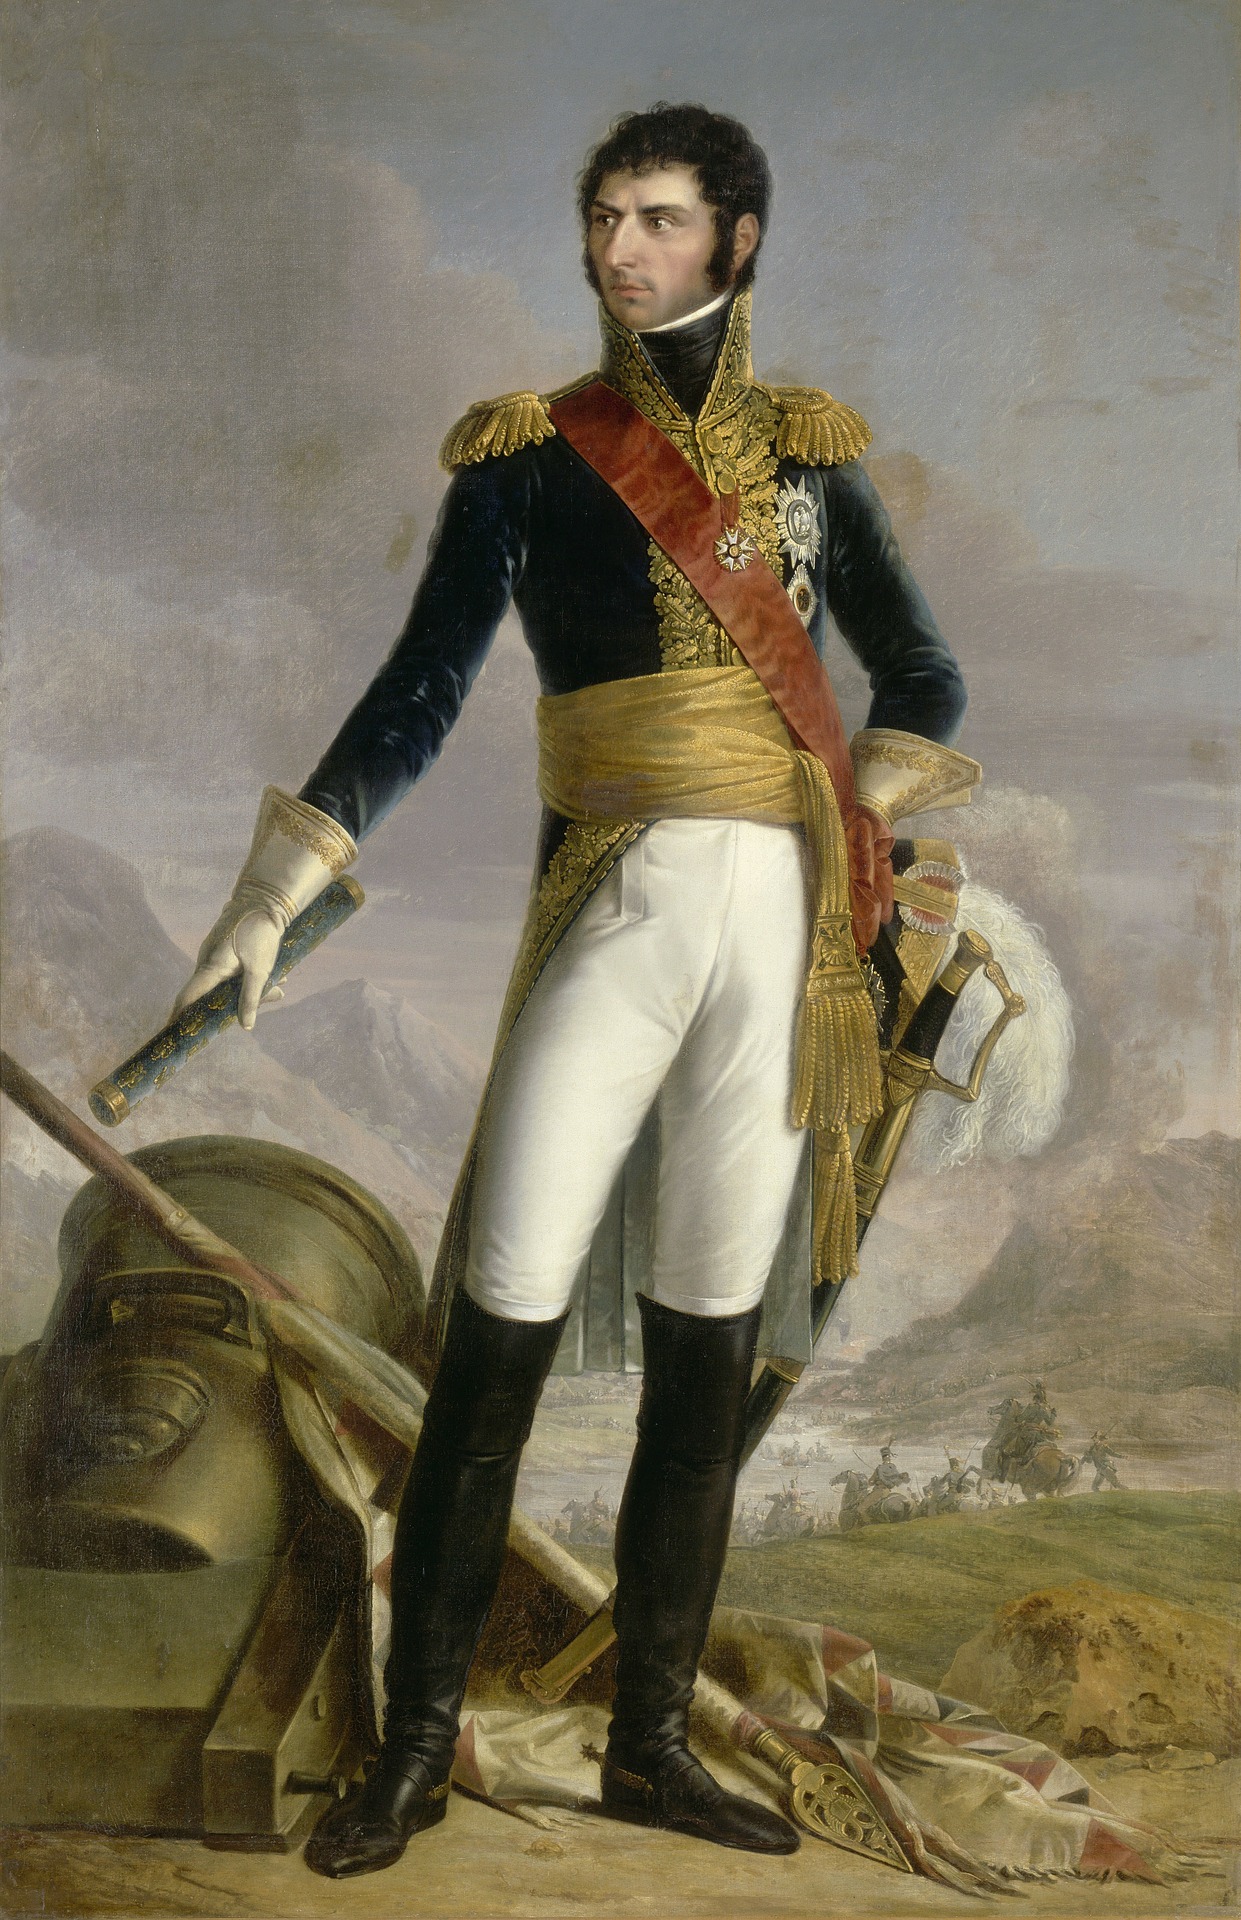 Jean-Baptiste Bernadotte ließ sich als glühender Mitstreiter der Revolution “La mort au roi!”(Tod dem König) stechen.